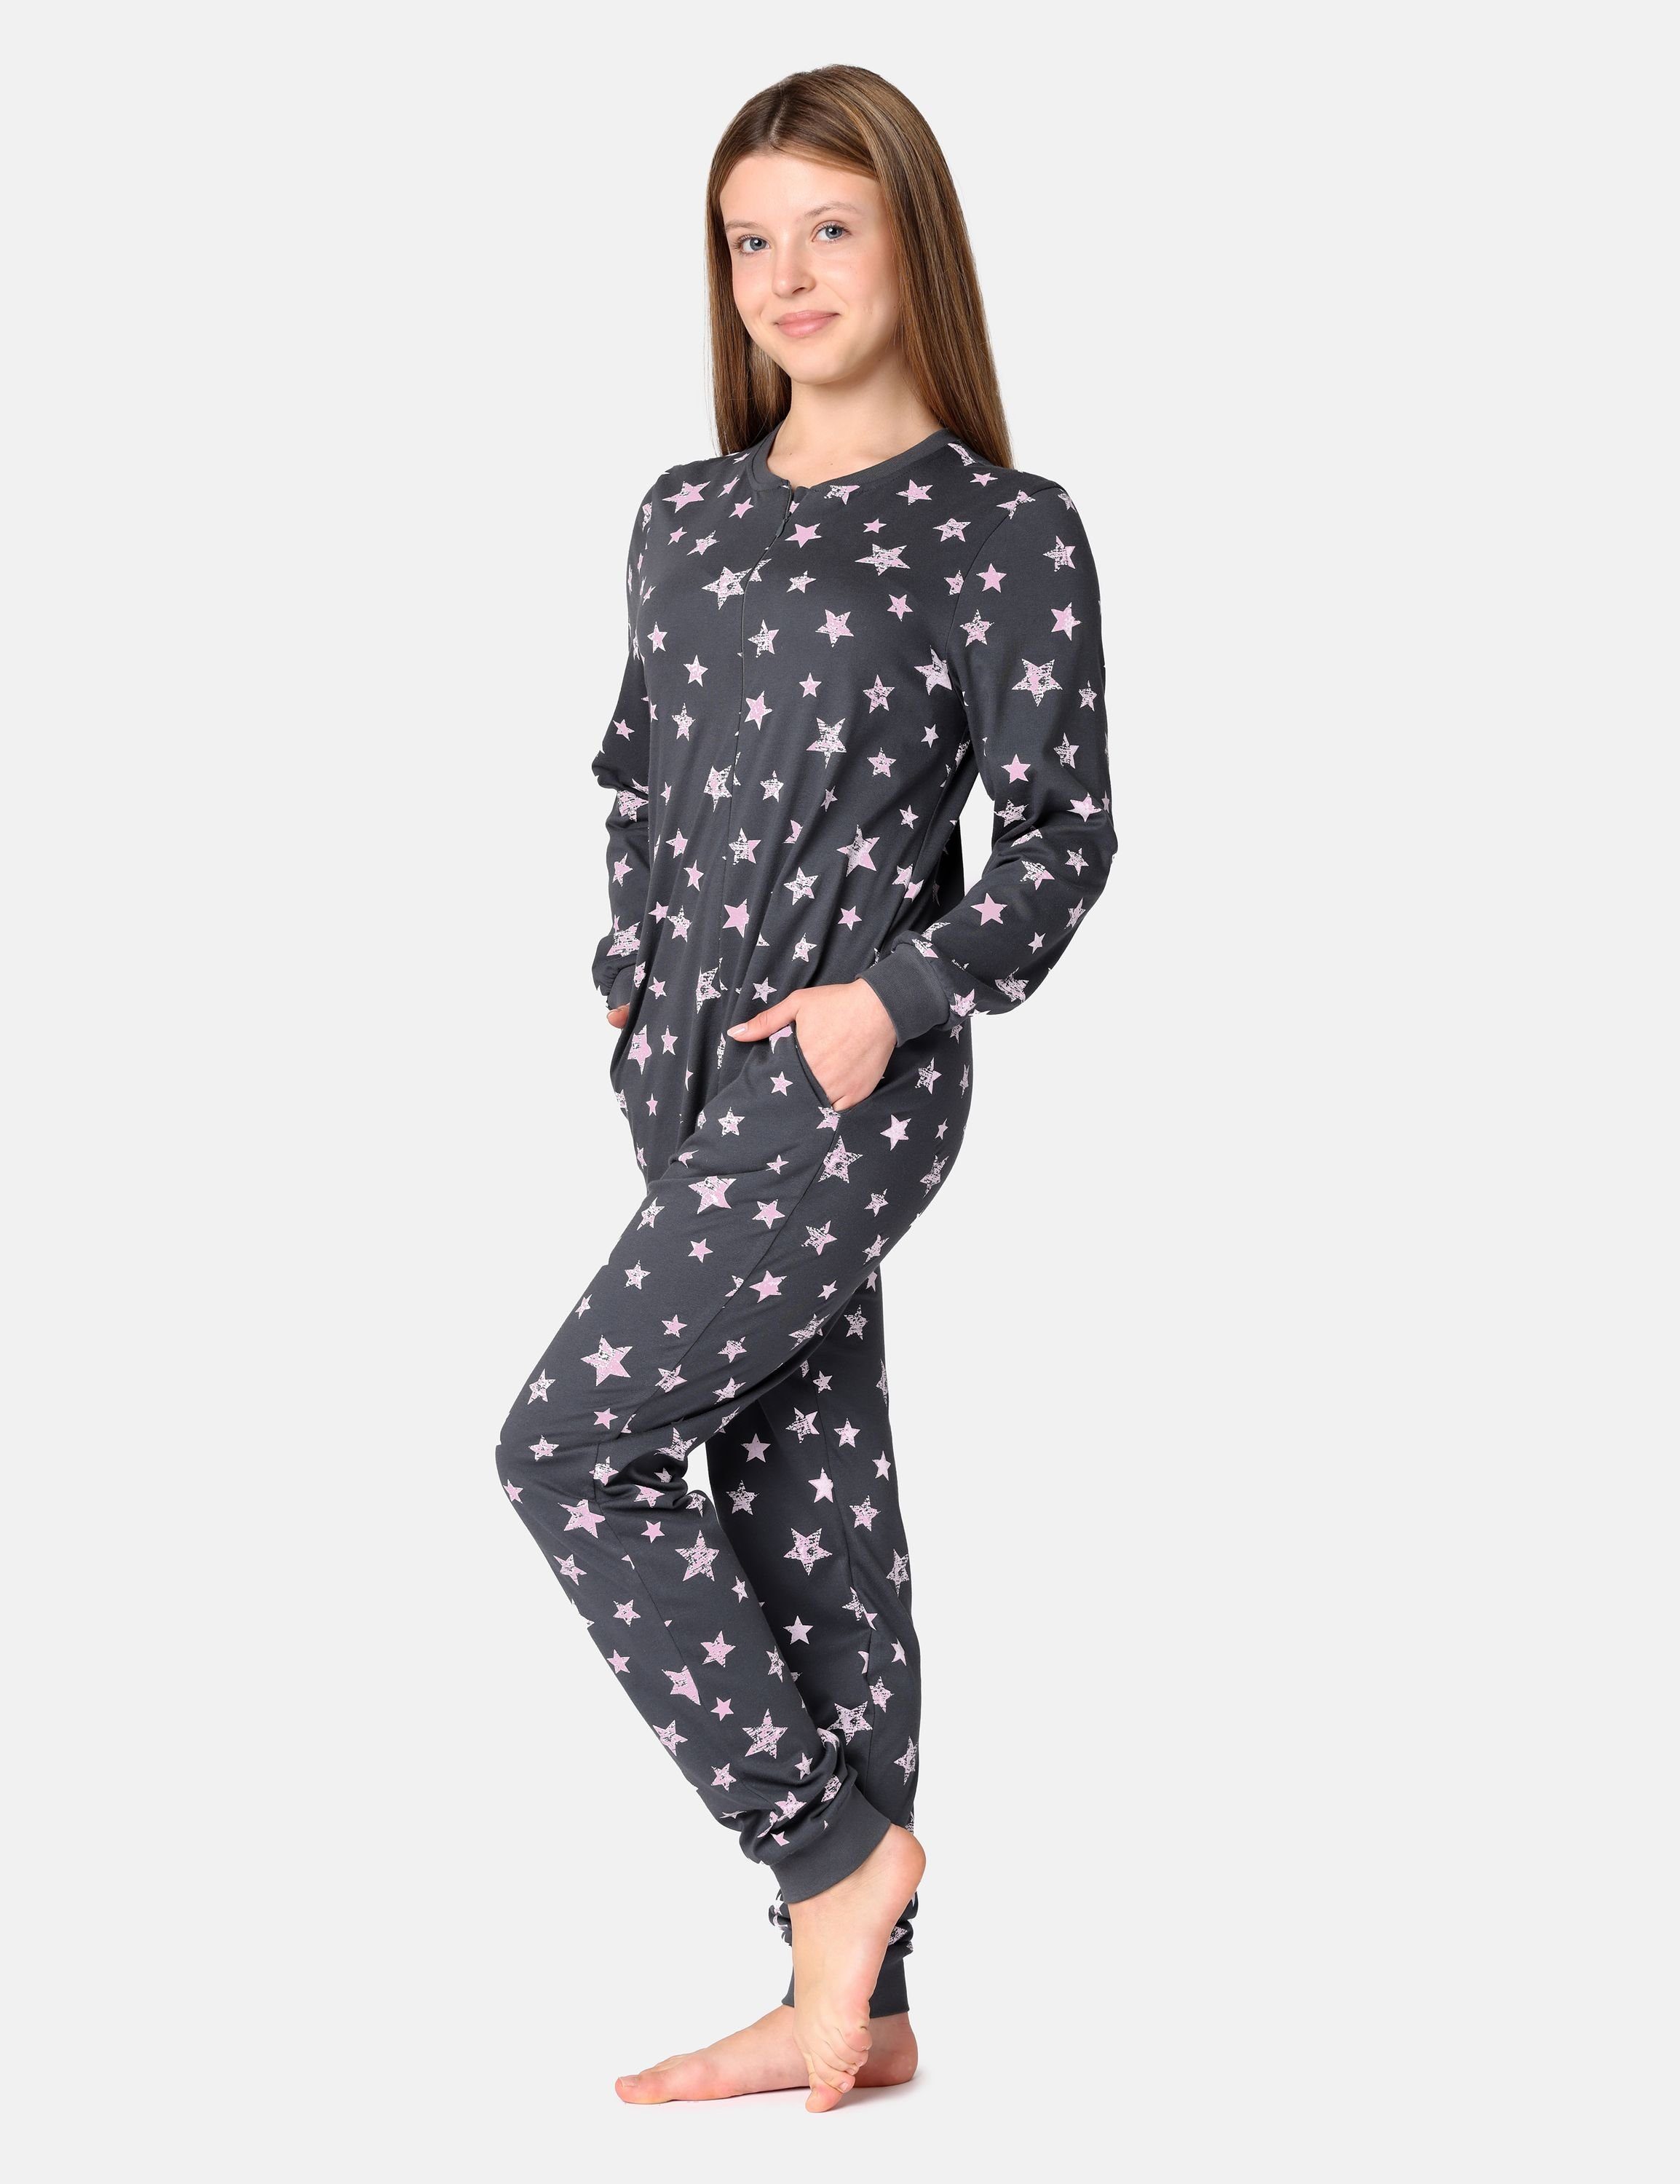 Schlafanzug Schlafanzug Sterne Merry Style Mädchen Jugend Schlafoverall MS10-235 Grafit/Rosa